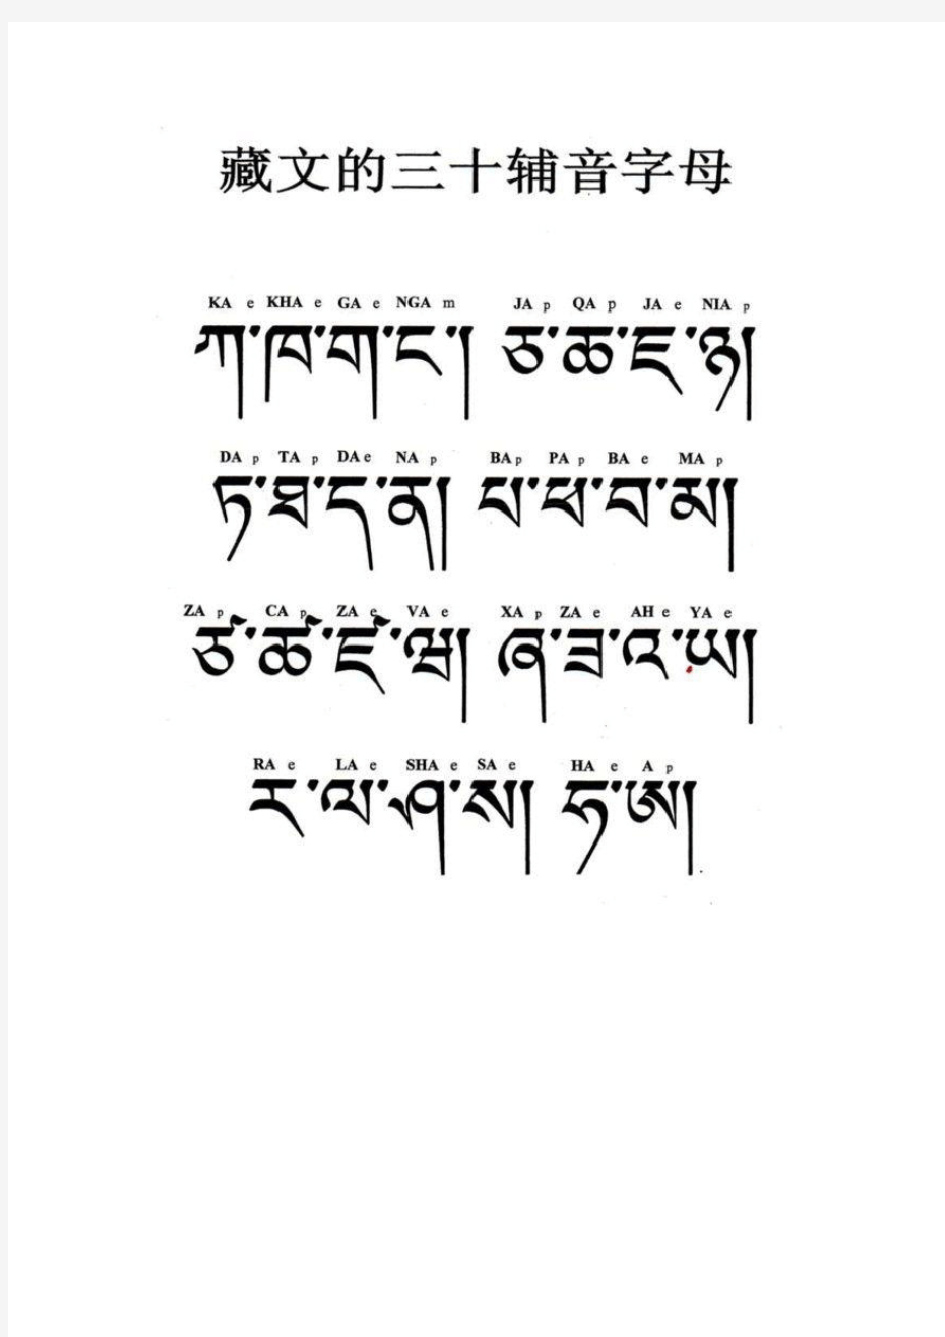 学习藏文必须掌握的基础知识